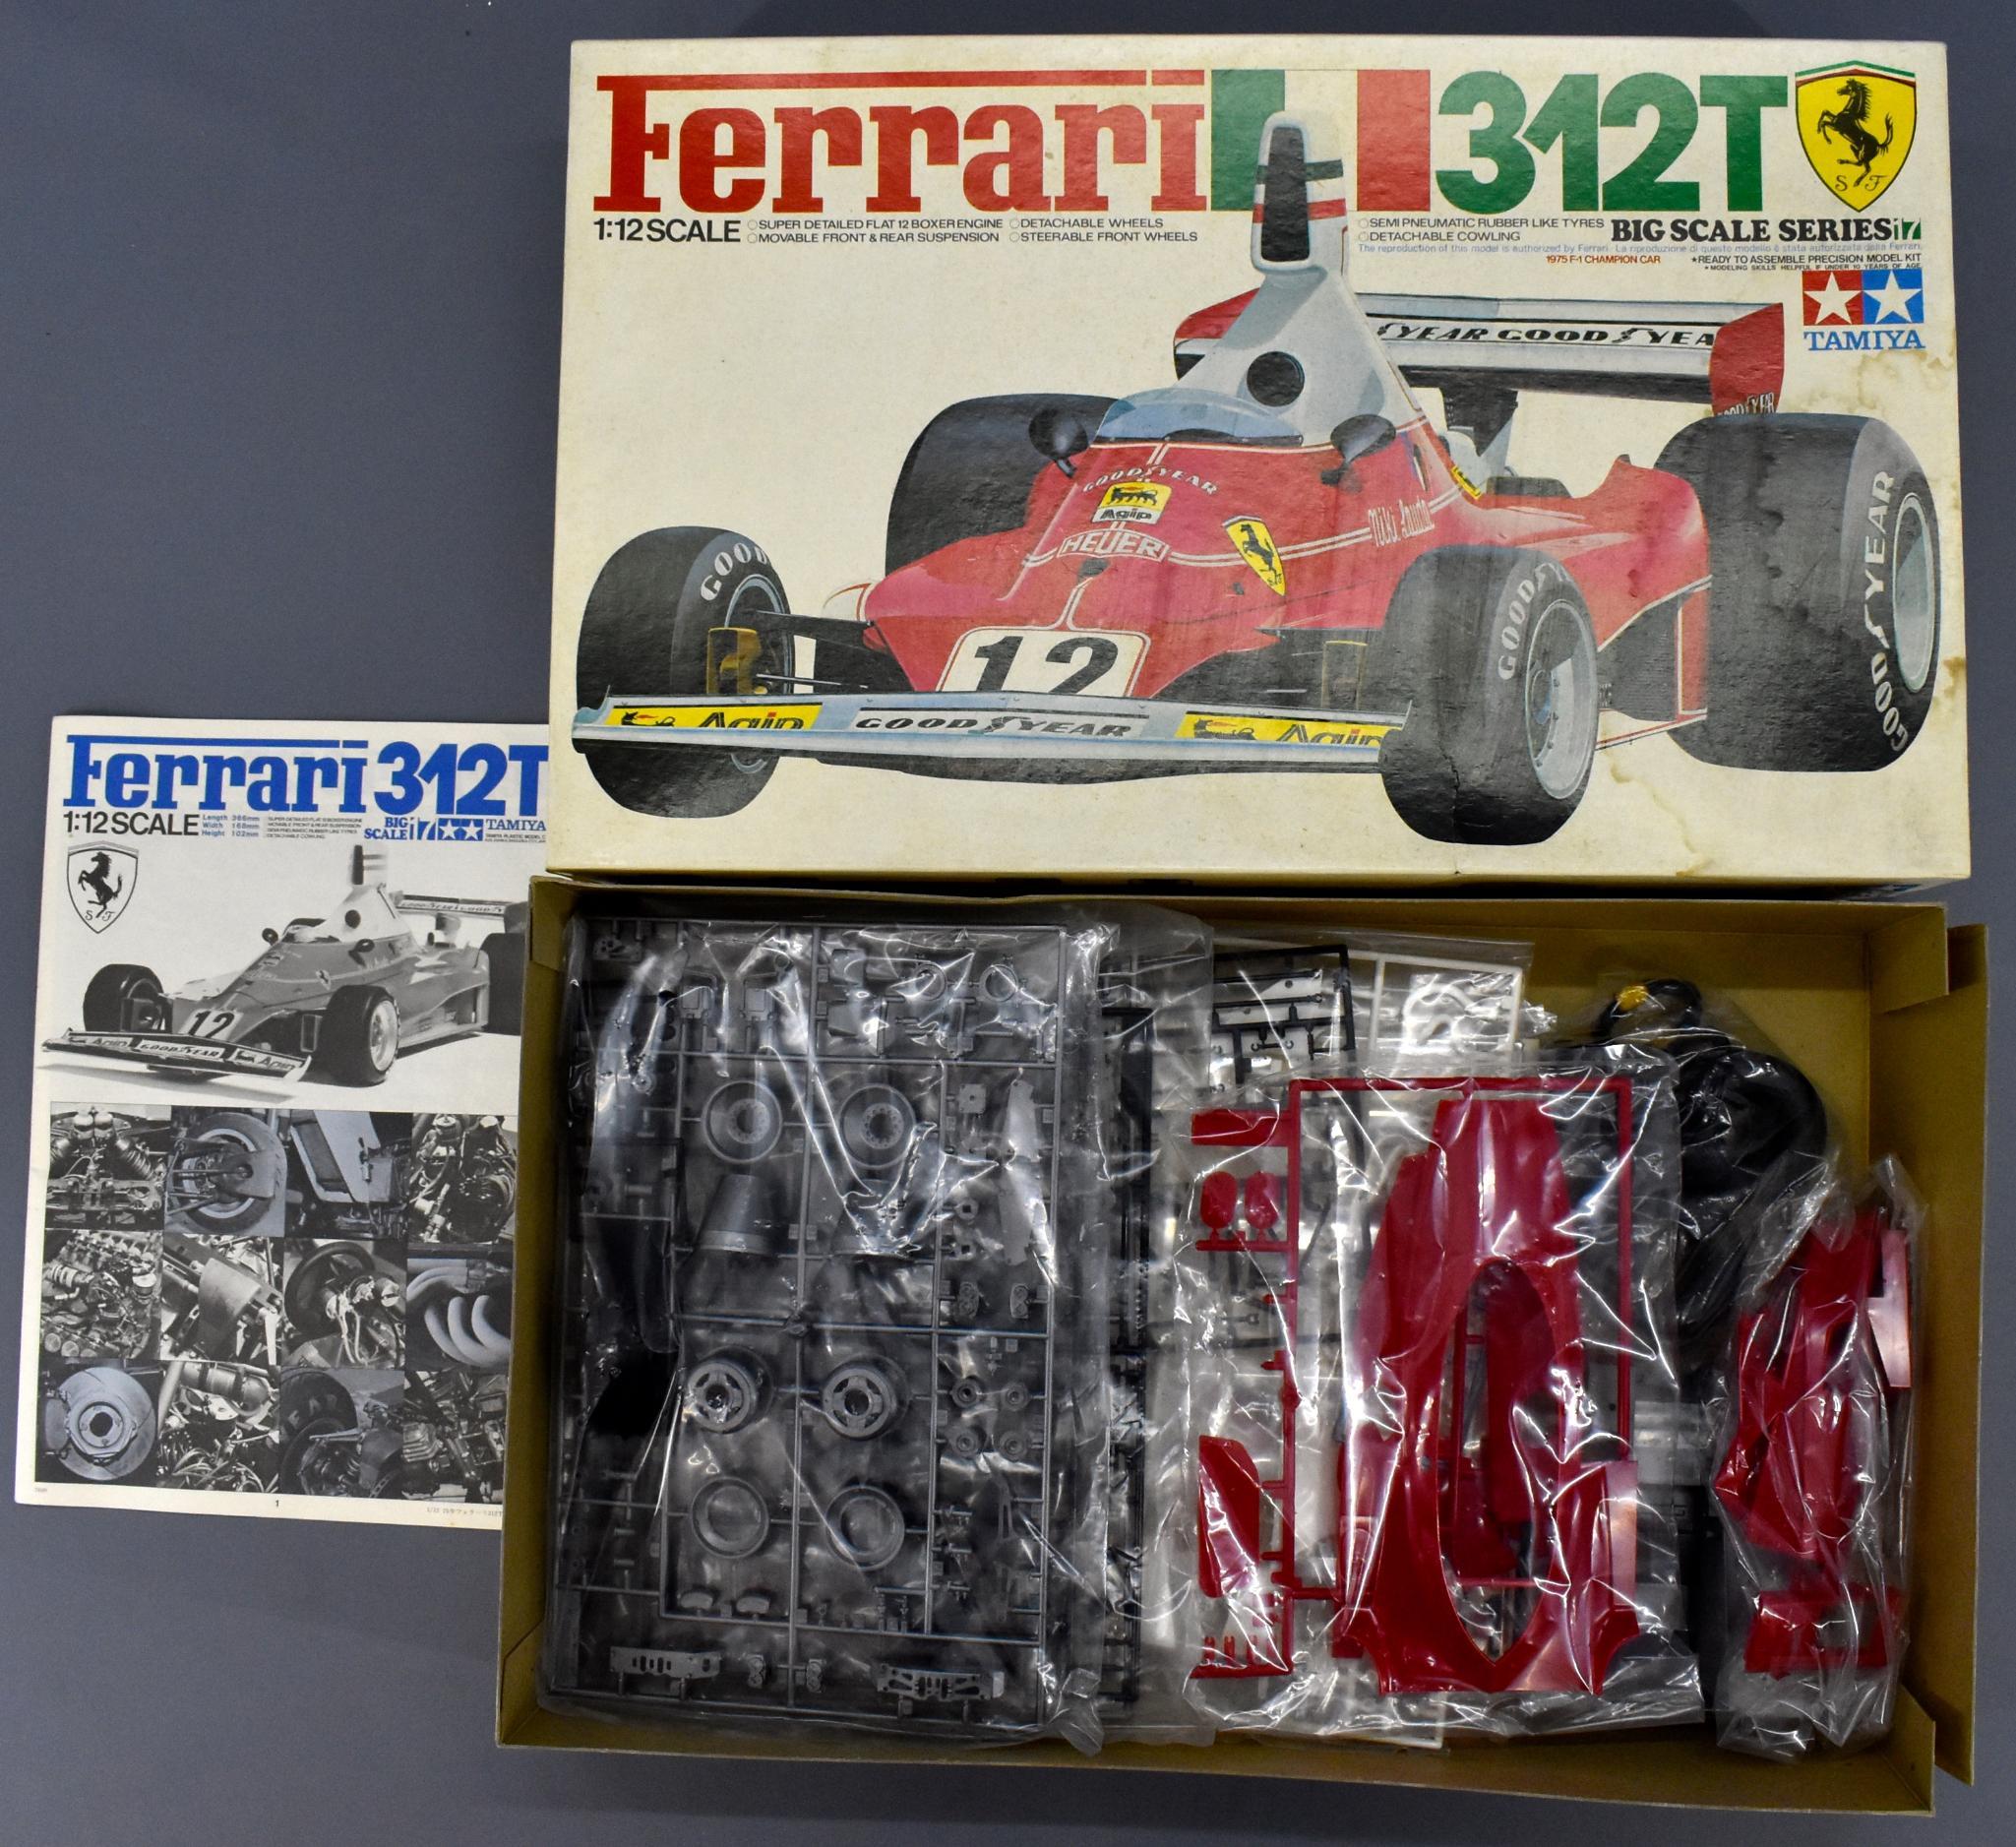 Mint unbuilt Tamiya F1 Ferrari 312T 1/12 scale model kit in